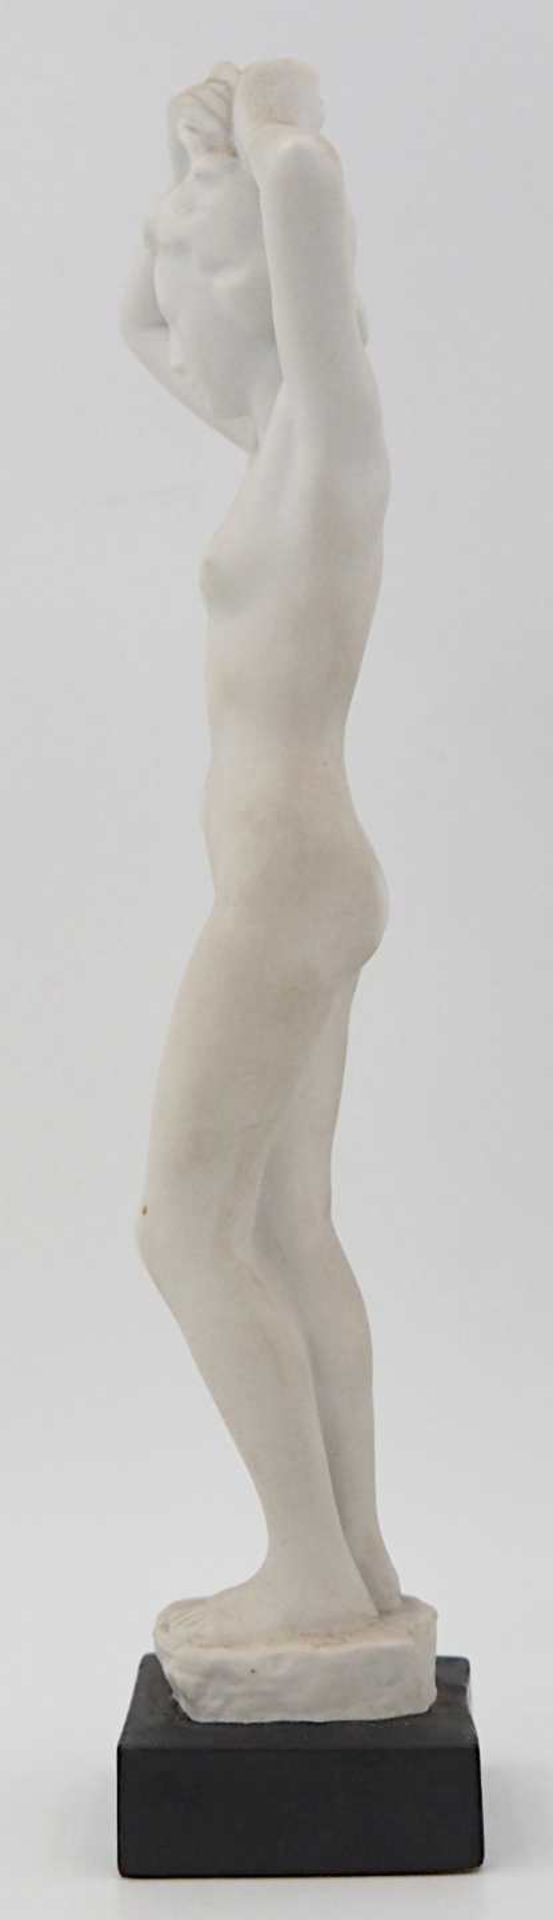 1 Figur Biskuitporzellan ROSENTHAL "Weiblicher Akt", Entwurf R. M. WERNER,wohl 1930er - Bild 2 aus 5